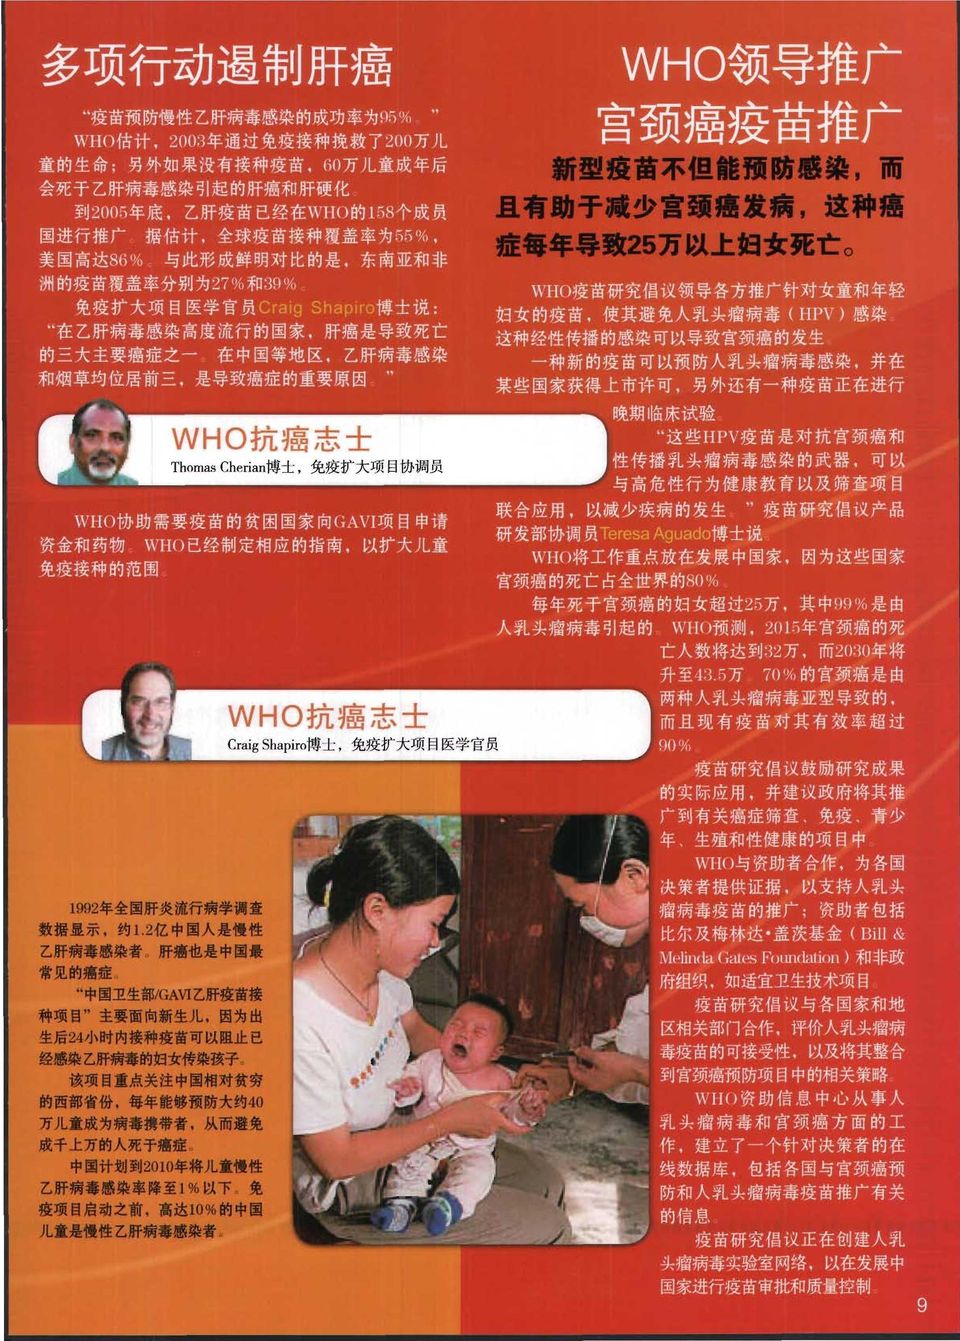 因 为 出 生 后 24 小 时 内 接 种 撞 苗 可 以 阻 止 巴 经 ' 搞 乙 肝 铺 霉 的 妇 女 传 到 k 孩 子 该 项 目 重 点 关 住 中 国 相 对 贫 穷 的 西 部 省 份.